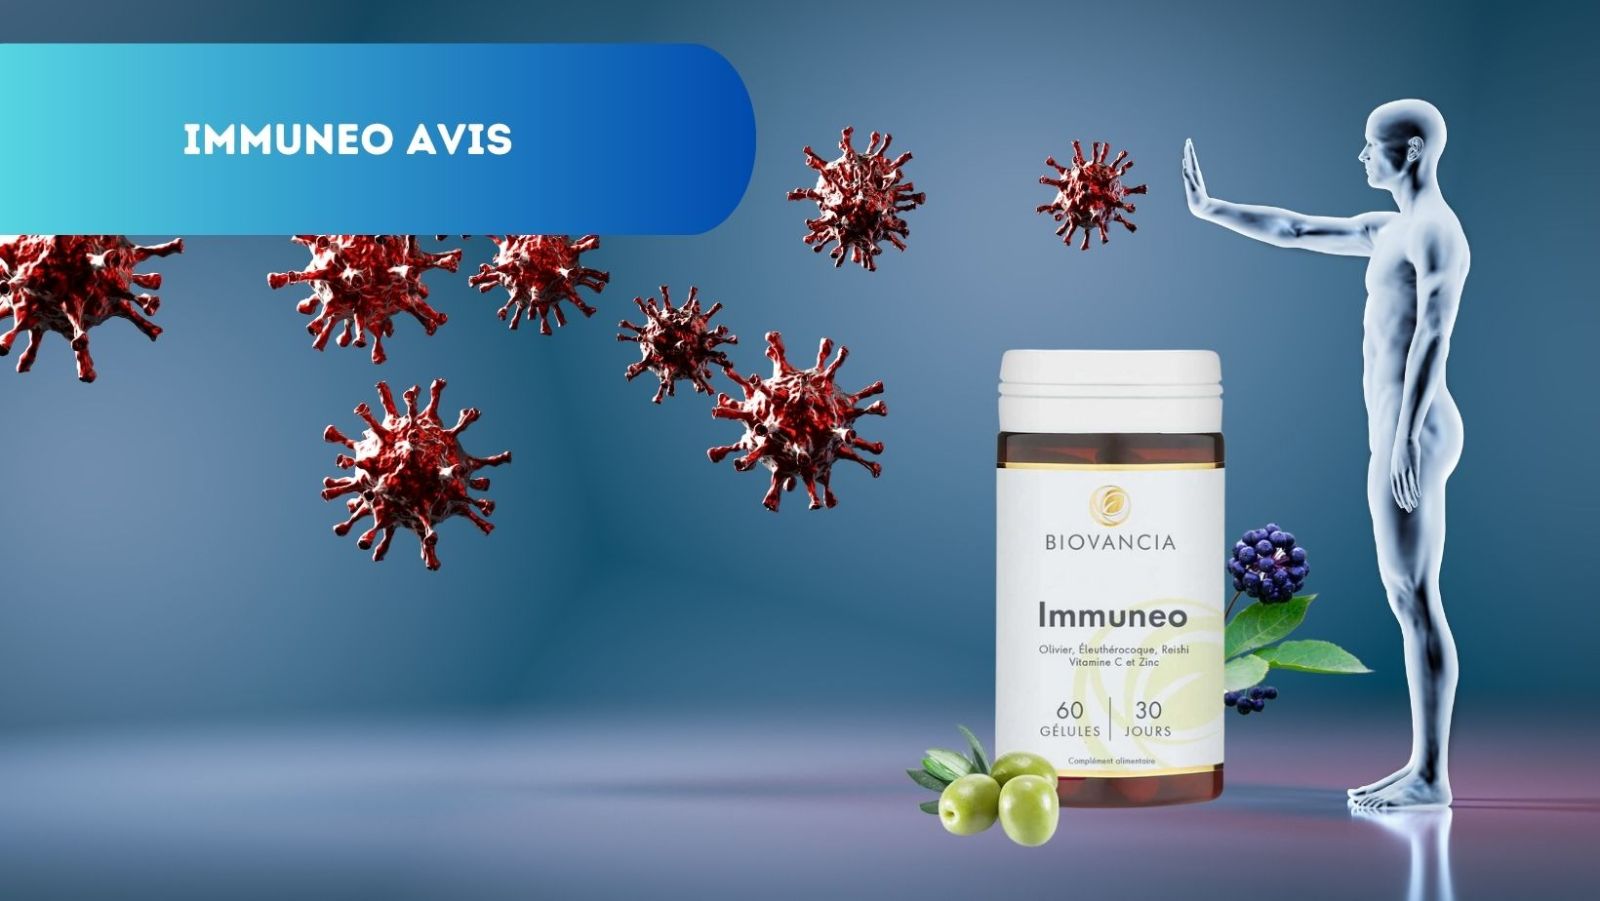 Avis Immuneo Biovancia: Renforcez votre immunité efficacement!